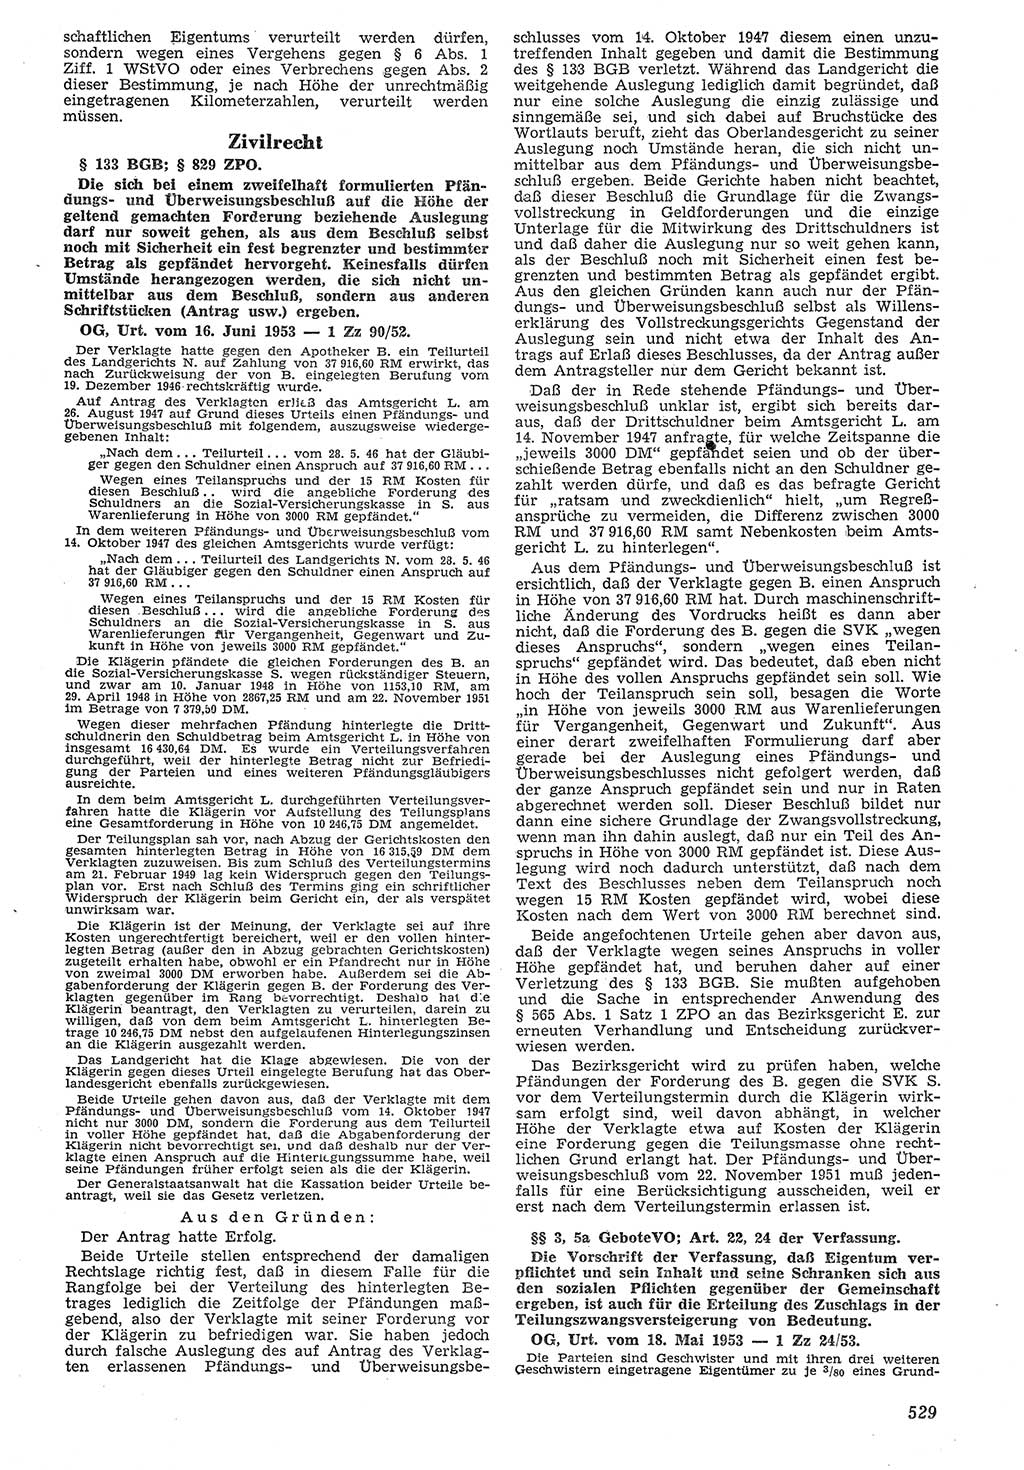 Neue Justiz (NJ), Zeitschrift für Recht und Rechtswissenschaft [Deutsche Demokratische Republik (DDR)], 7. Jahrgang 1953, Seite 529 (NJ DDR 1953, S. 529)